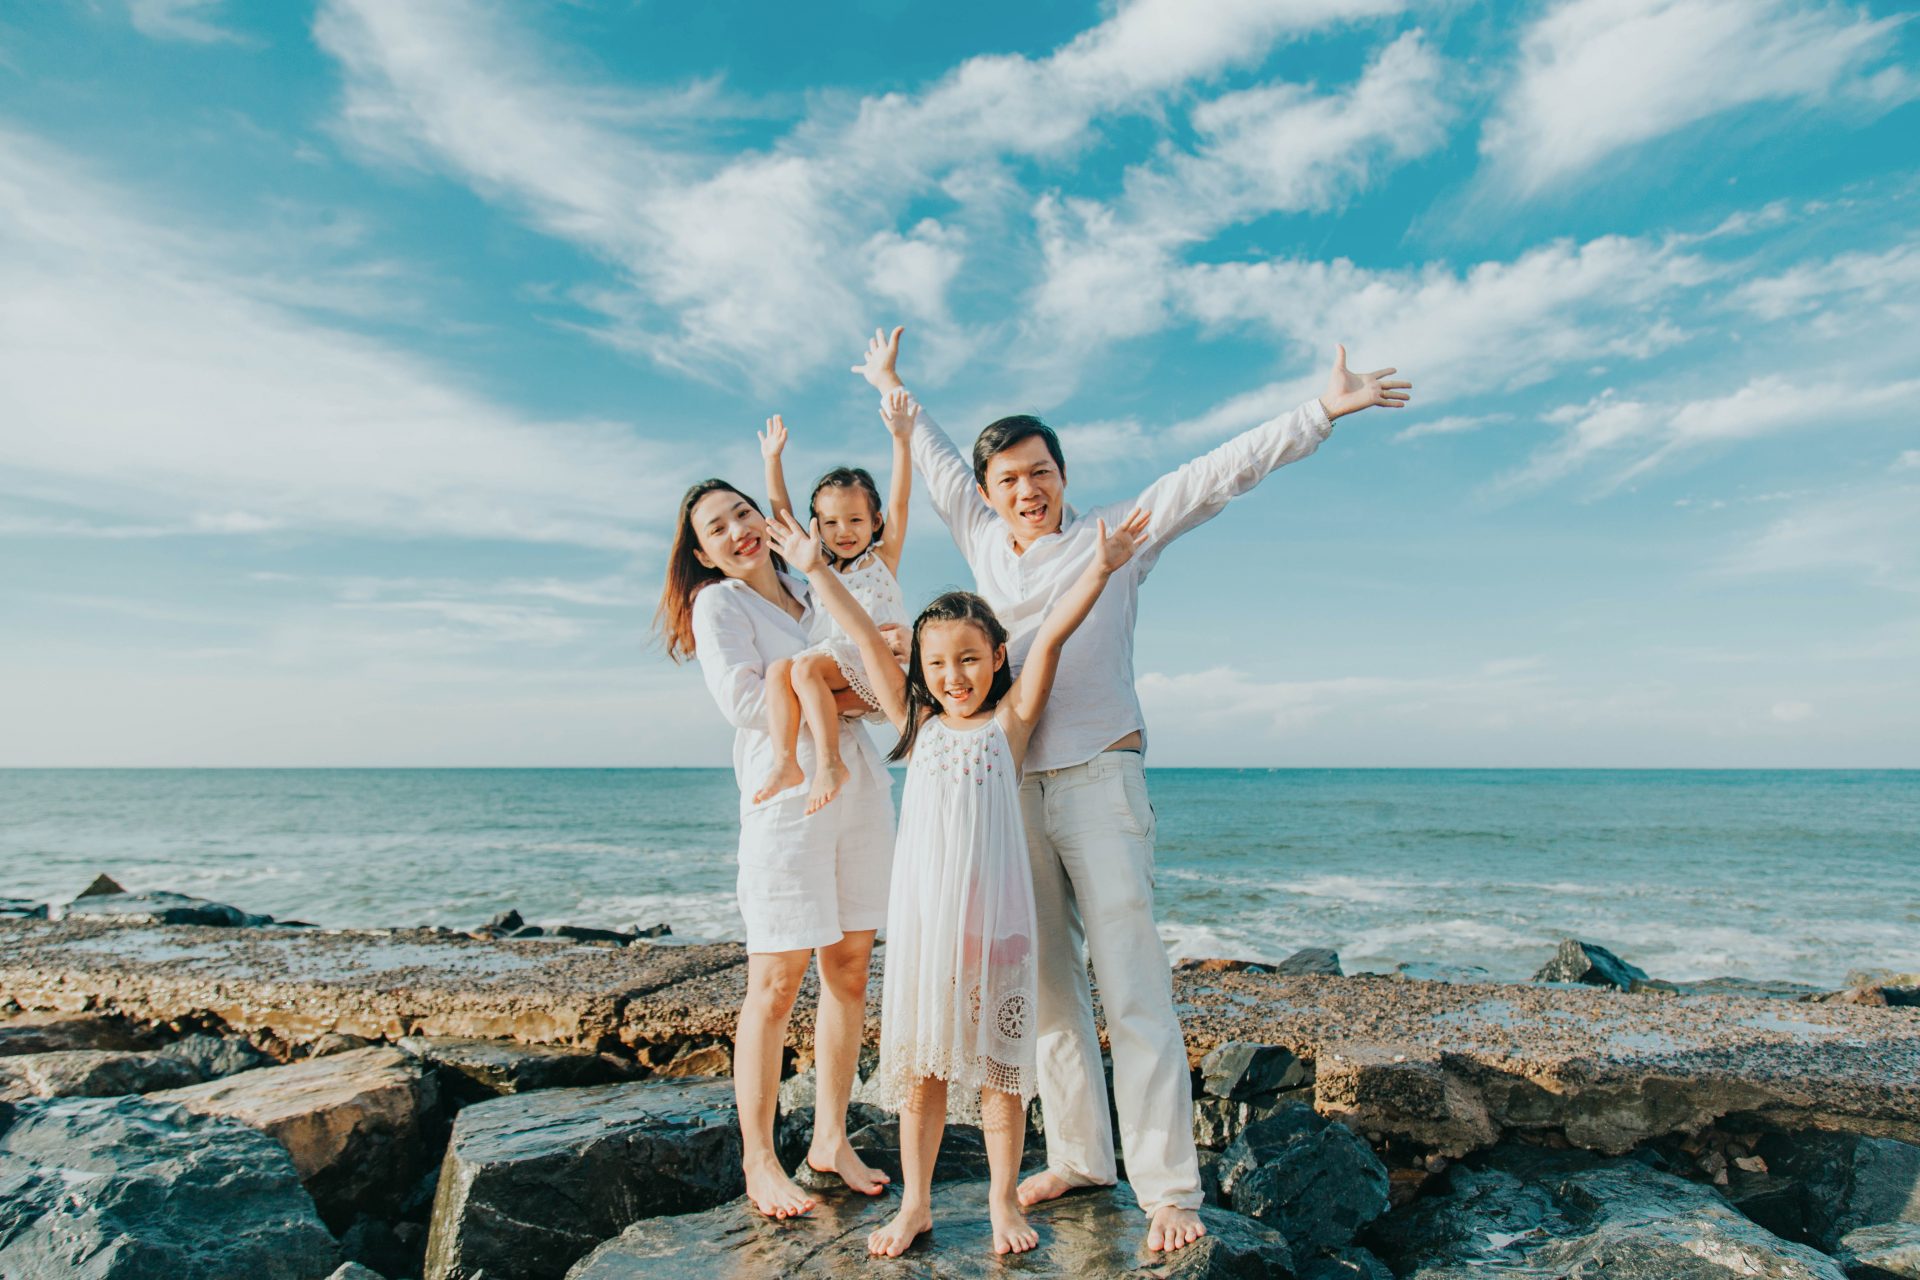 Hãy đến Vũng Tàu để chụp những bức ảnh gia đình đẹp và ý nghĩa nhất! Bãi biển xinh đẹp và không gian yên tĩnh tại đây sẽ là nơi tuyệt vời để bạn và gia đình có những khoảnh khắc đáng nhớ. Hãy để chúng tôi giúp bạn lưu giữ những khoảnh khắc đẹp nhất của thân thương gia đình bạn.